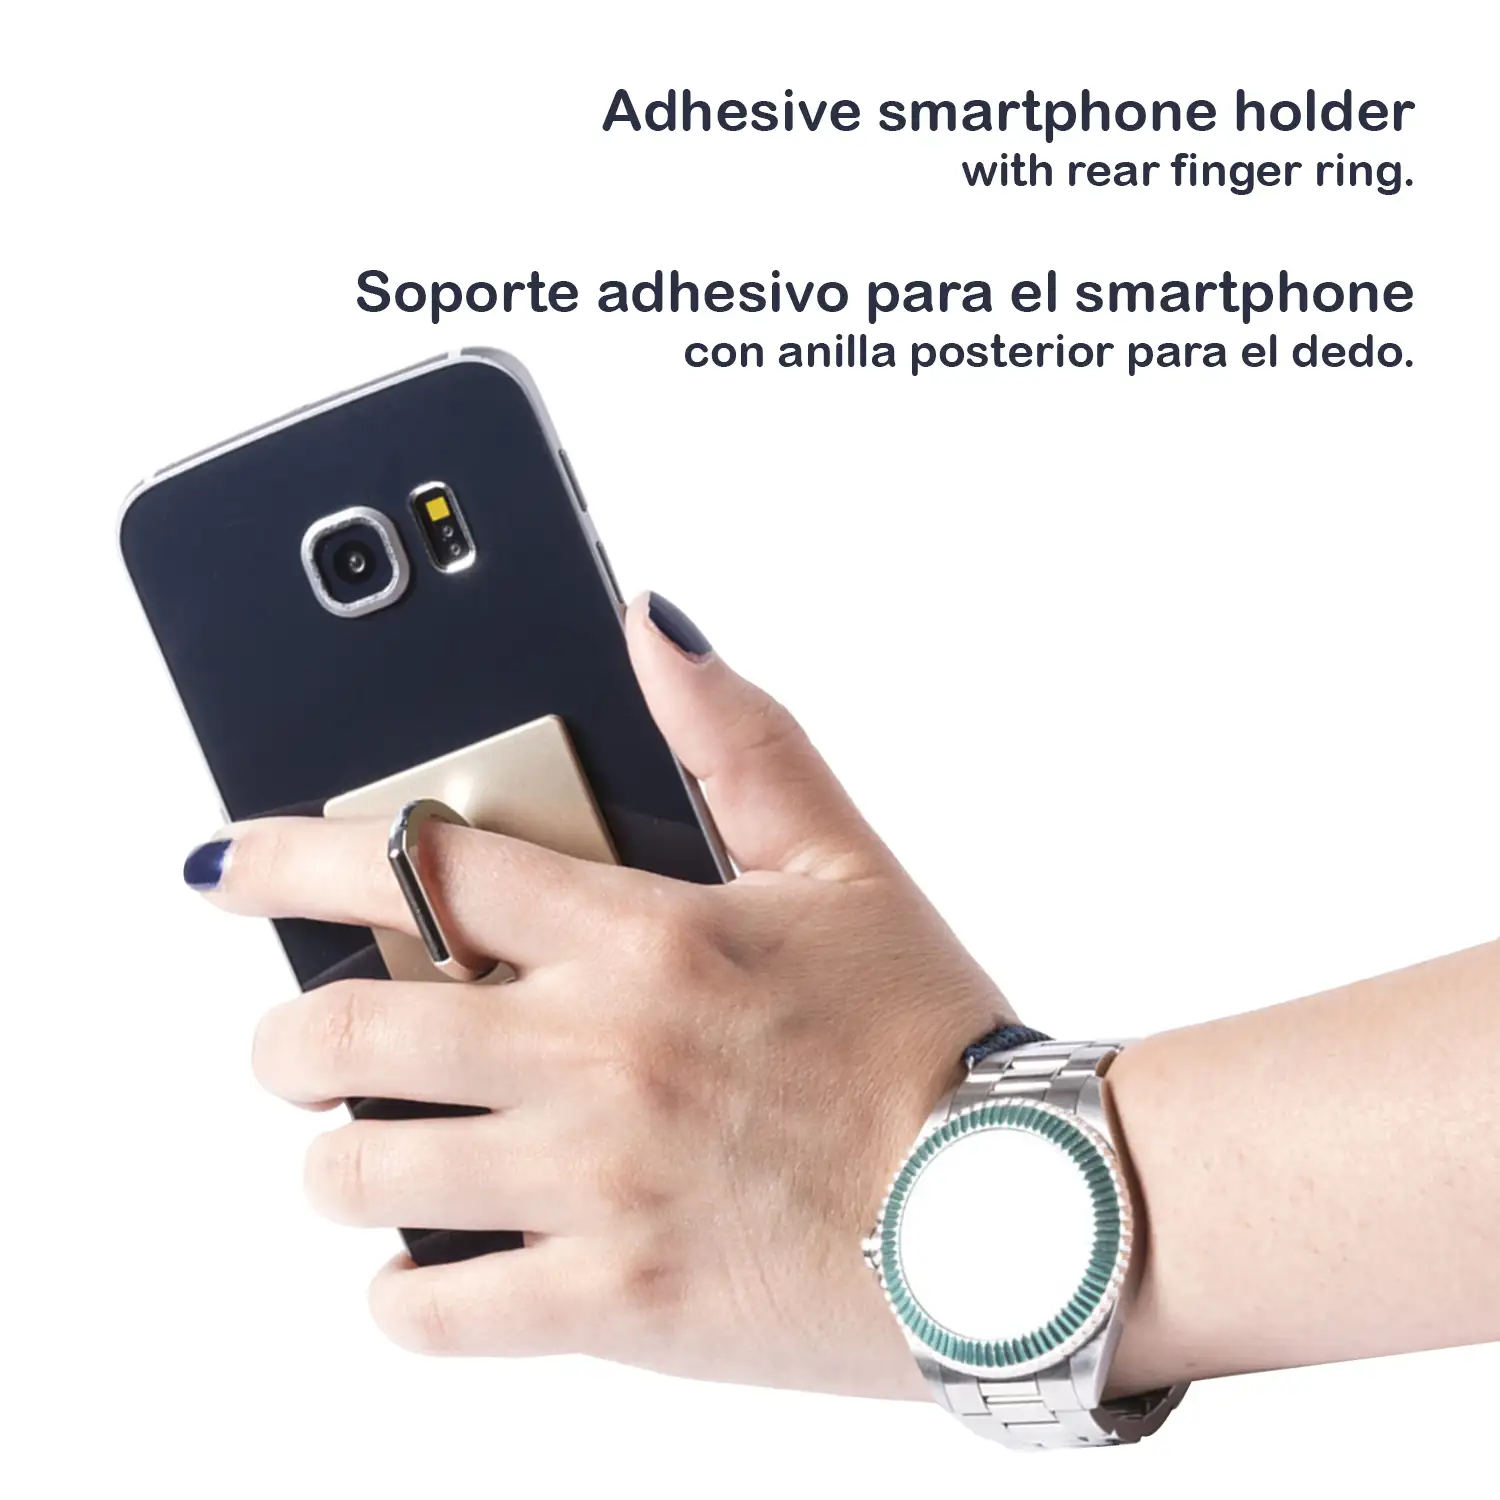 Soporte de anilla adhesivo para smartphone.